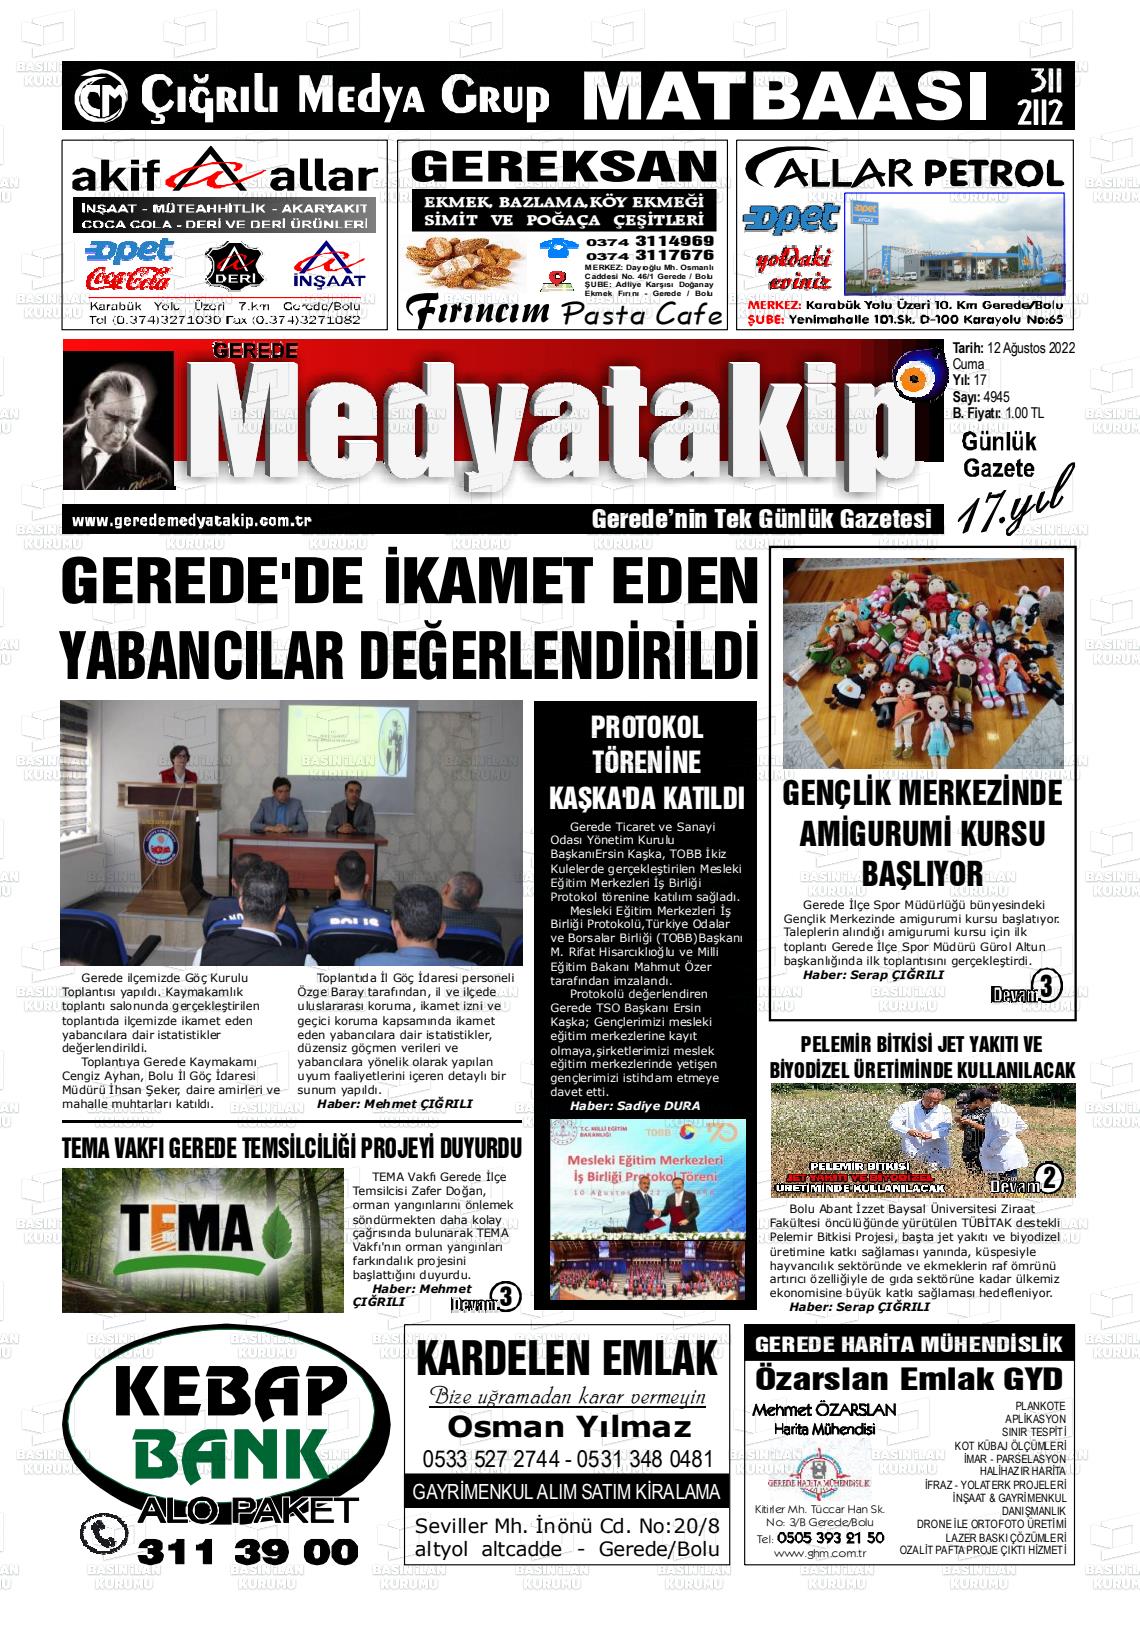 12 Ağustos 2022 Gerede Medya Takip Gazete Manşeti